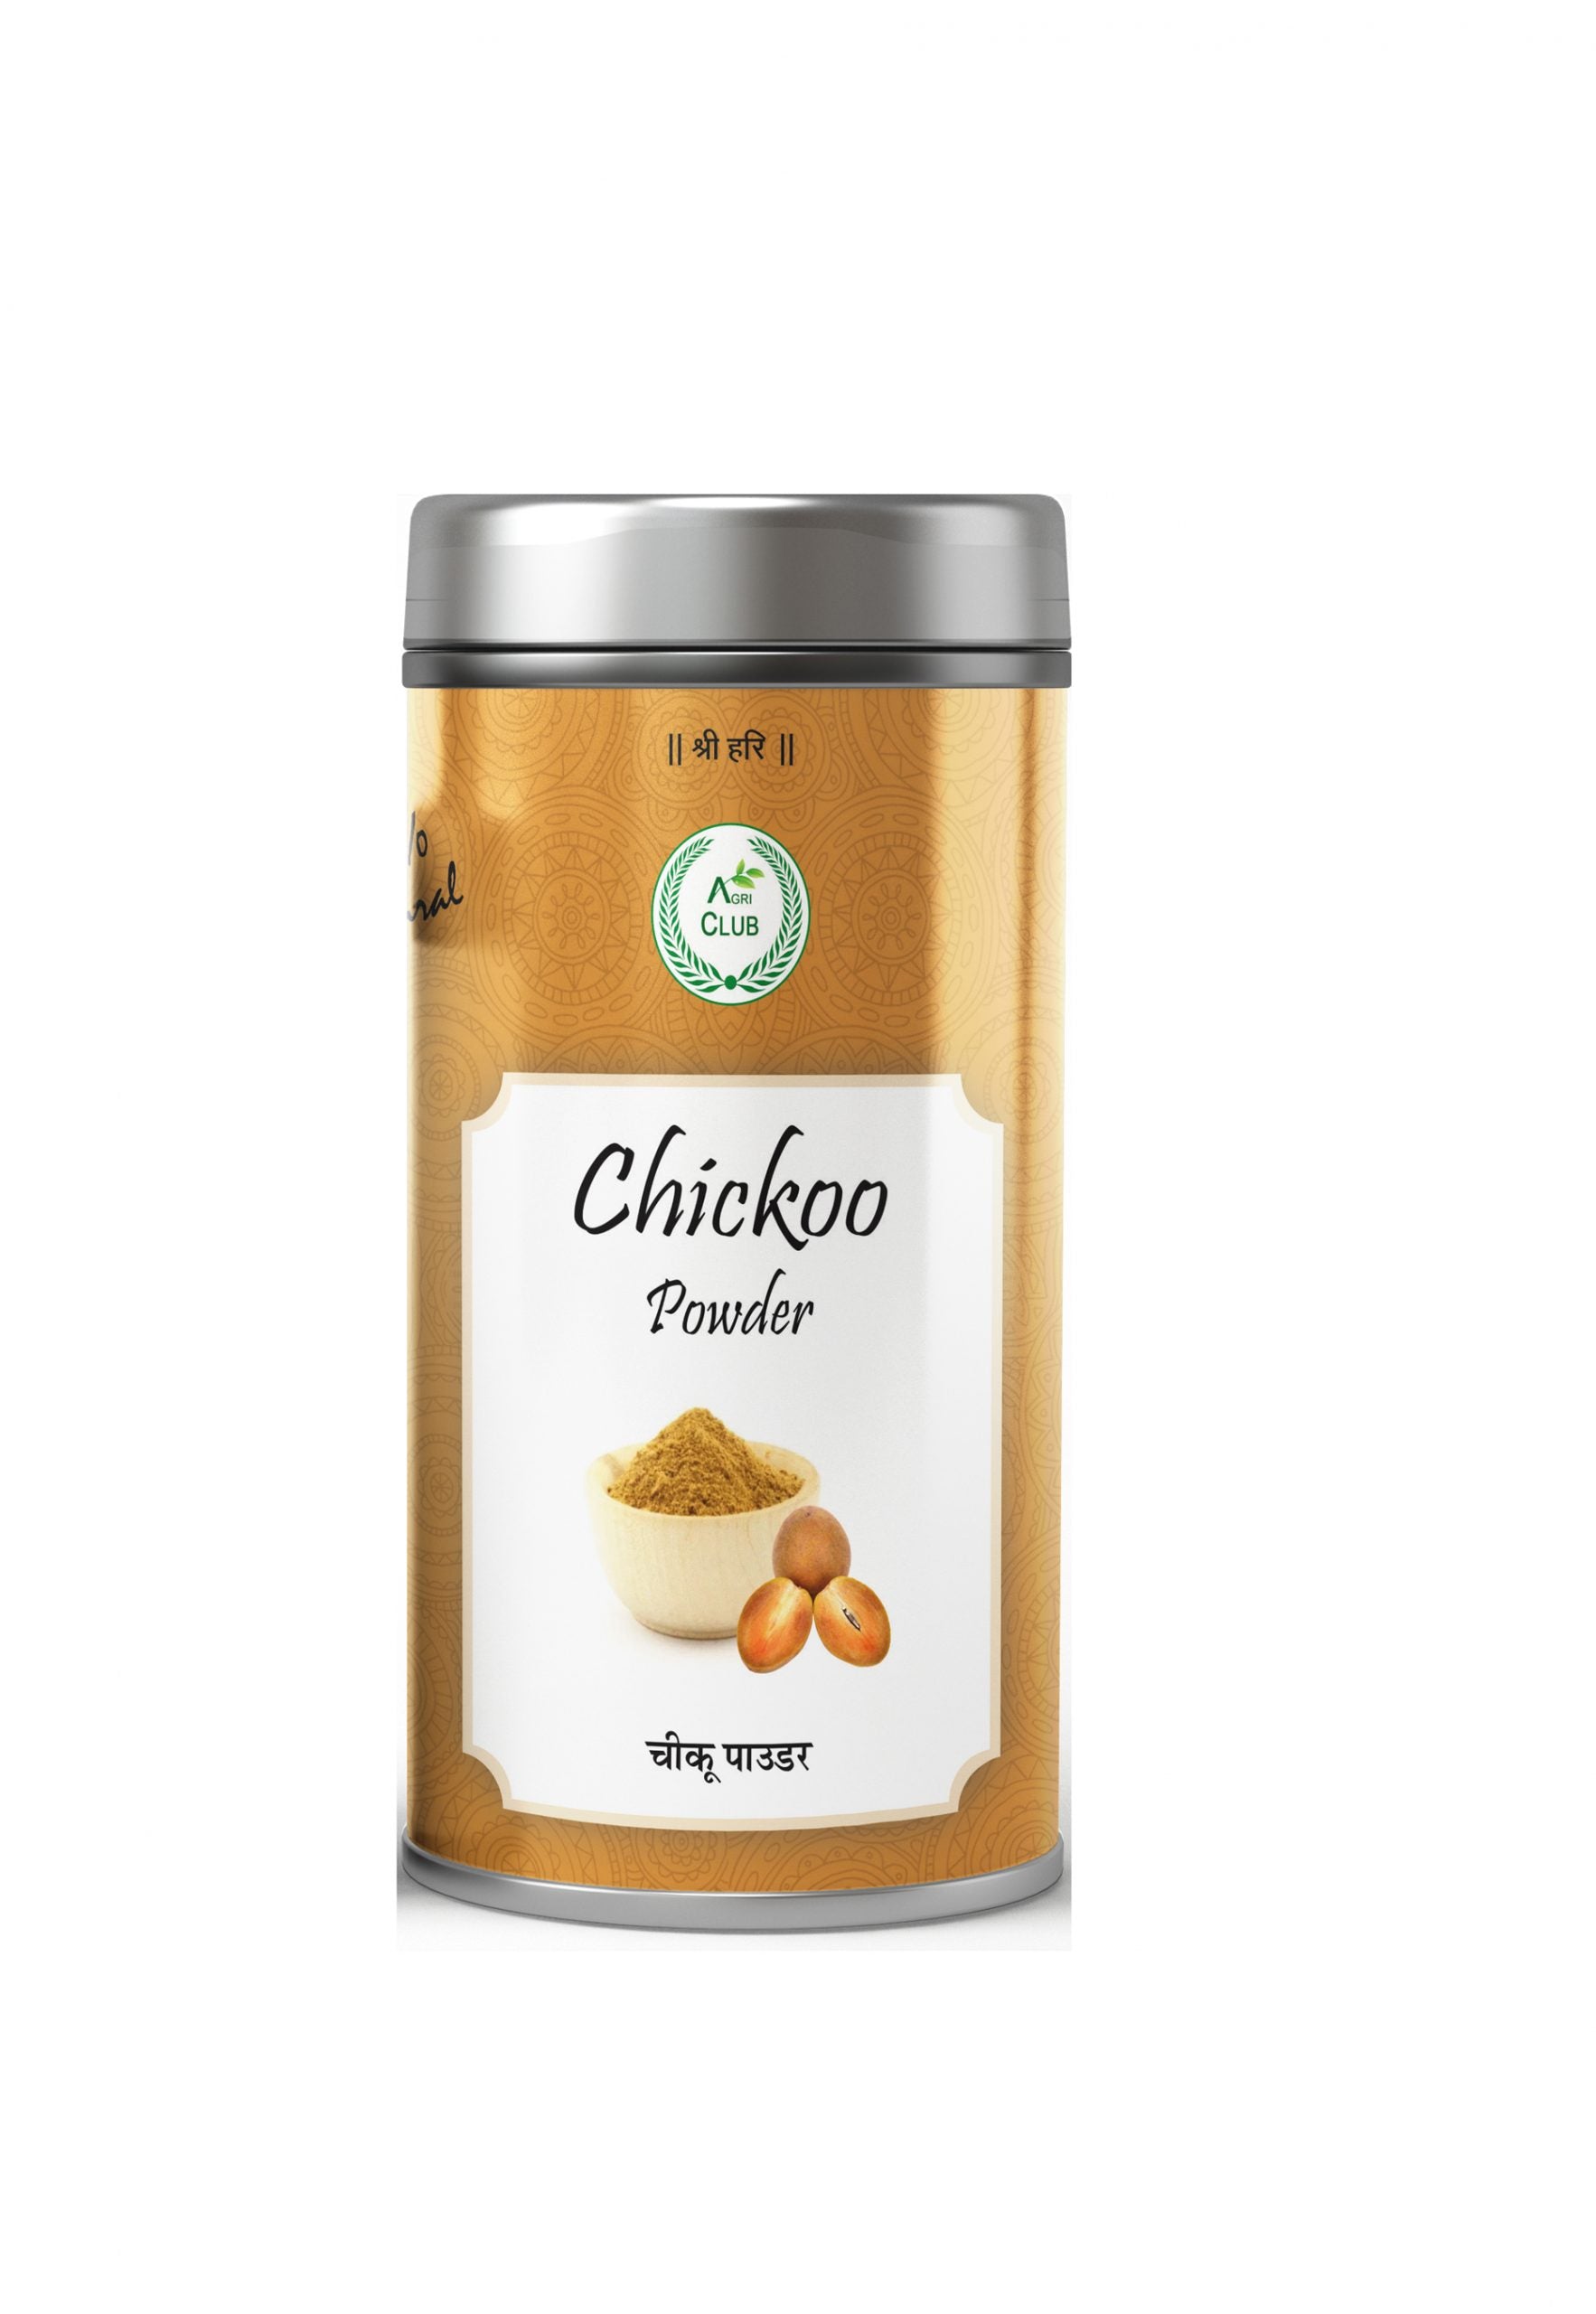 Chikoo Powder 100 % Natural